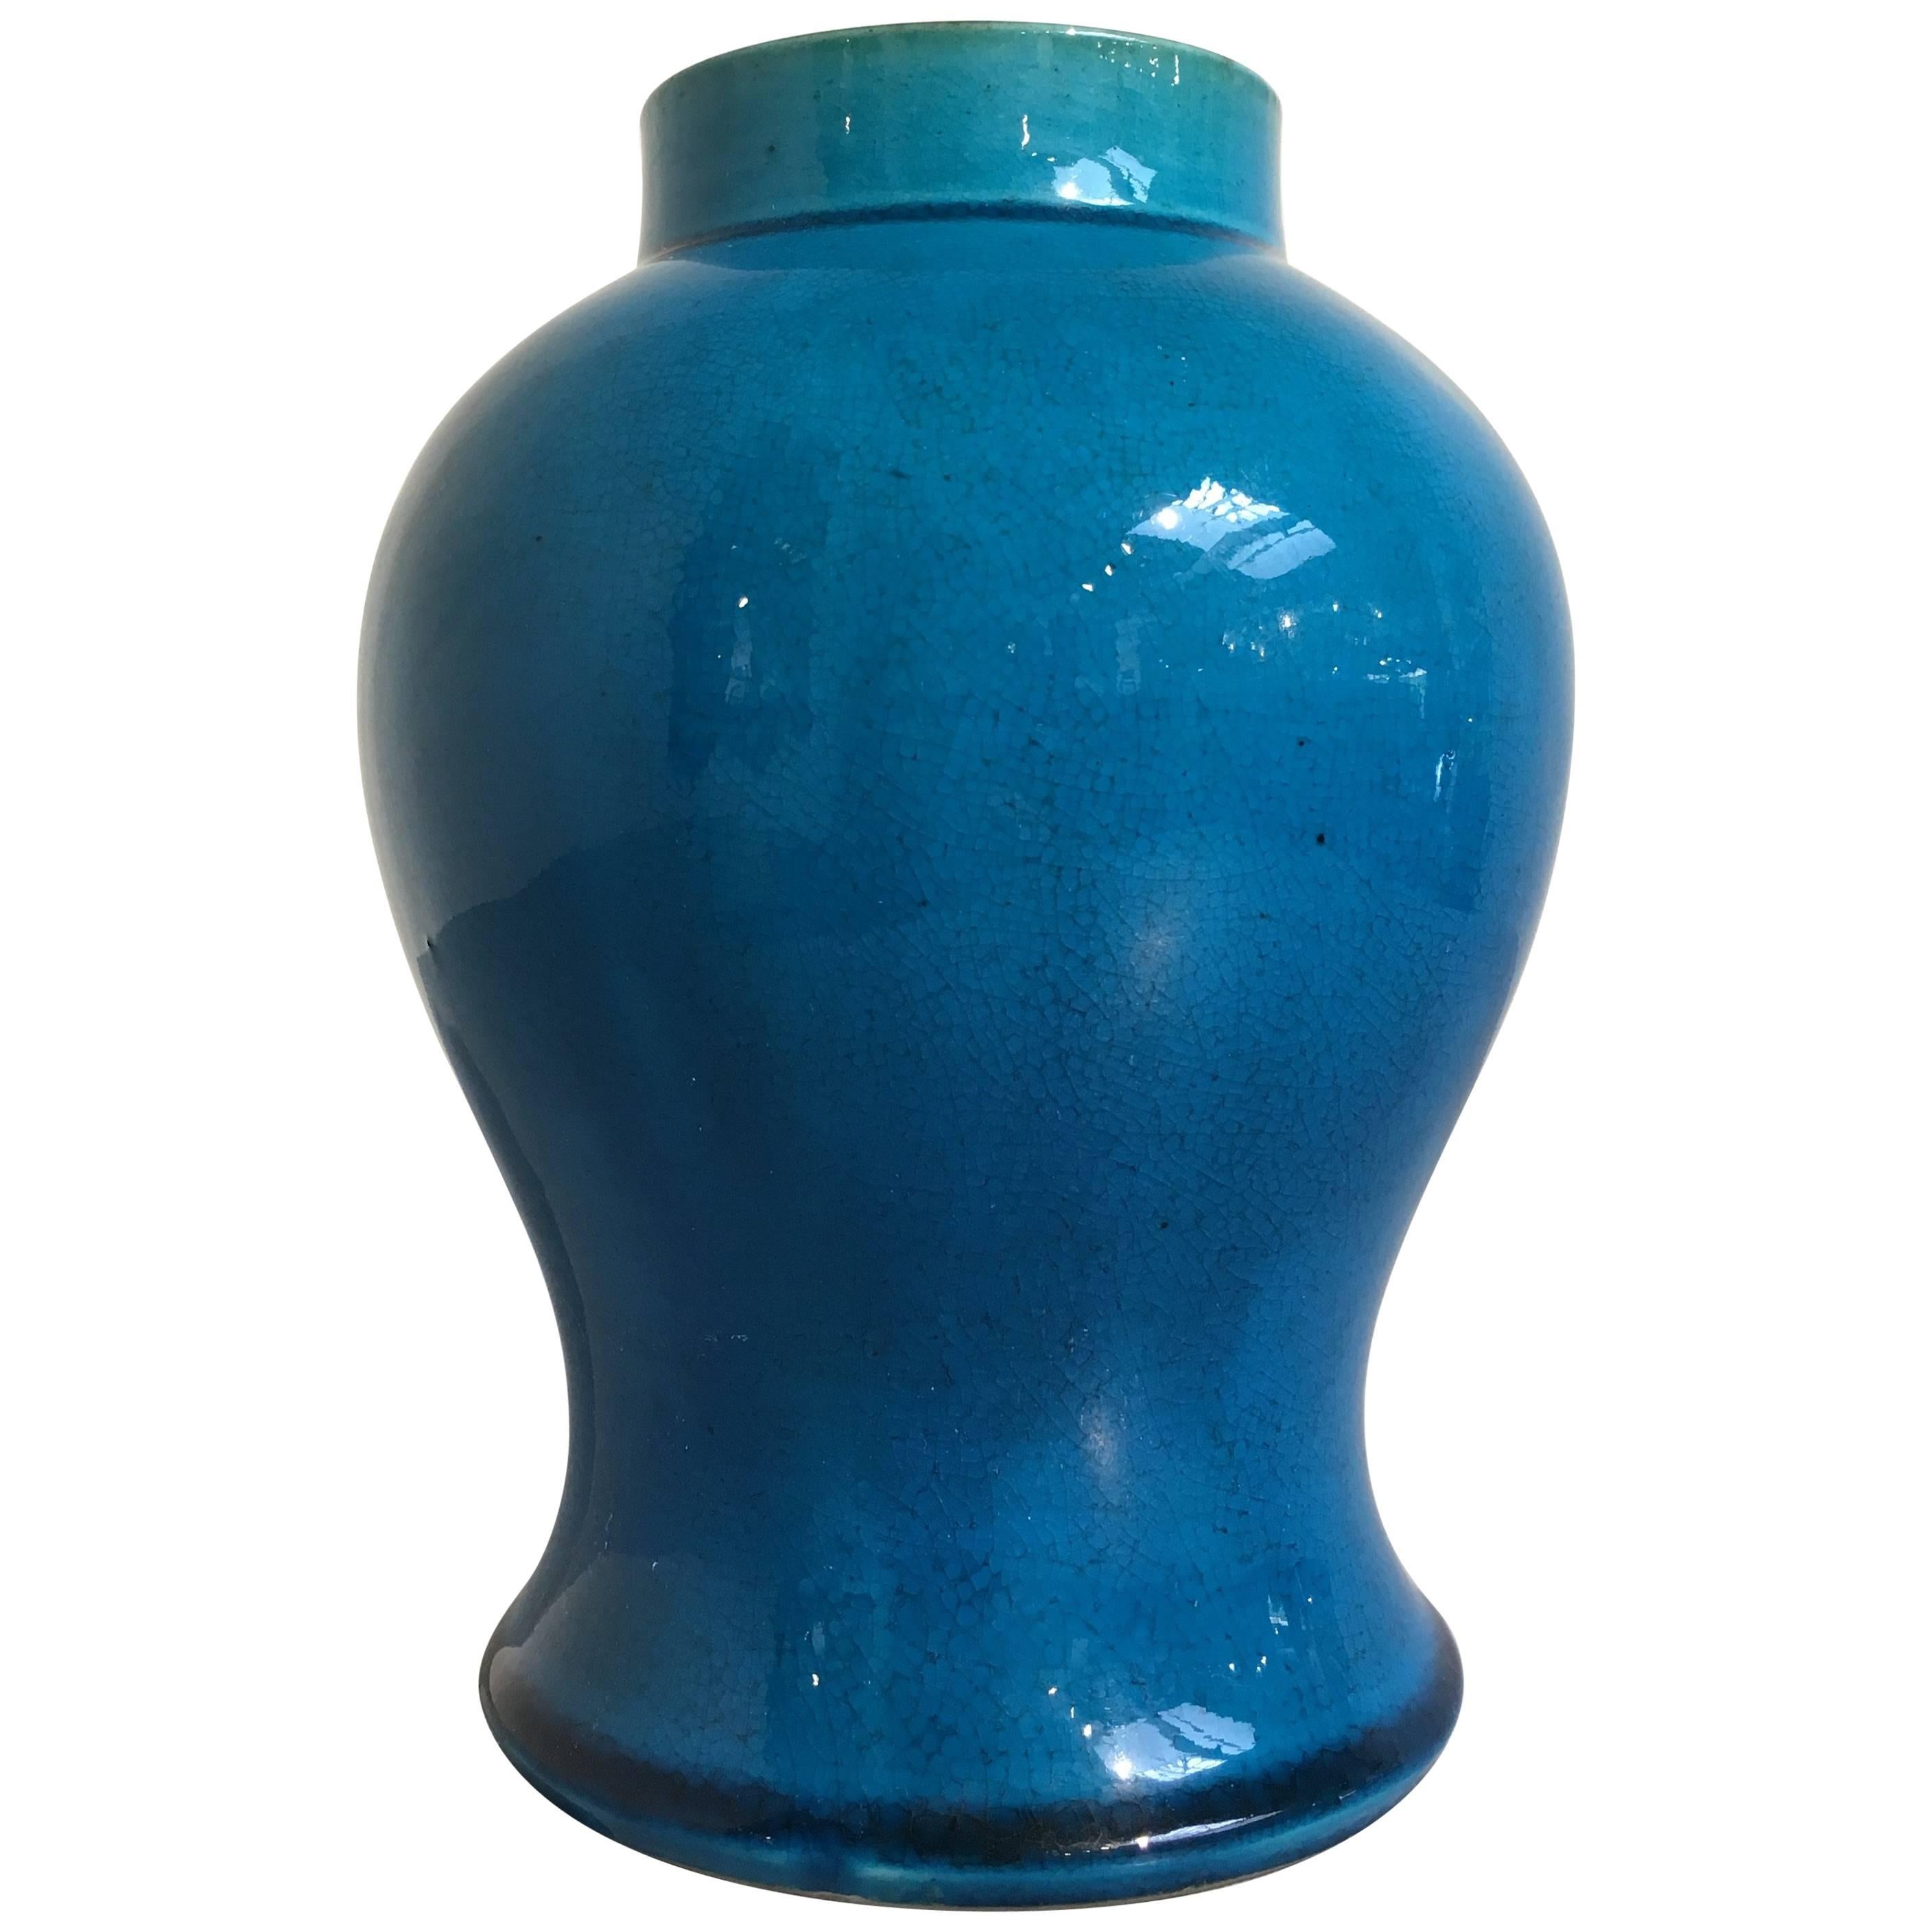 Late Qing Dynasty Chinese Turquoise Glazed Baluster Vase, circa 1900